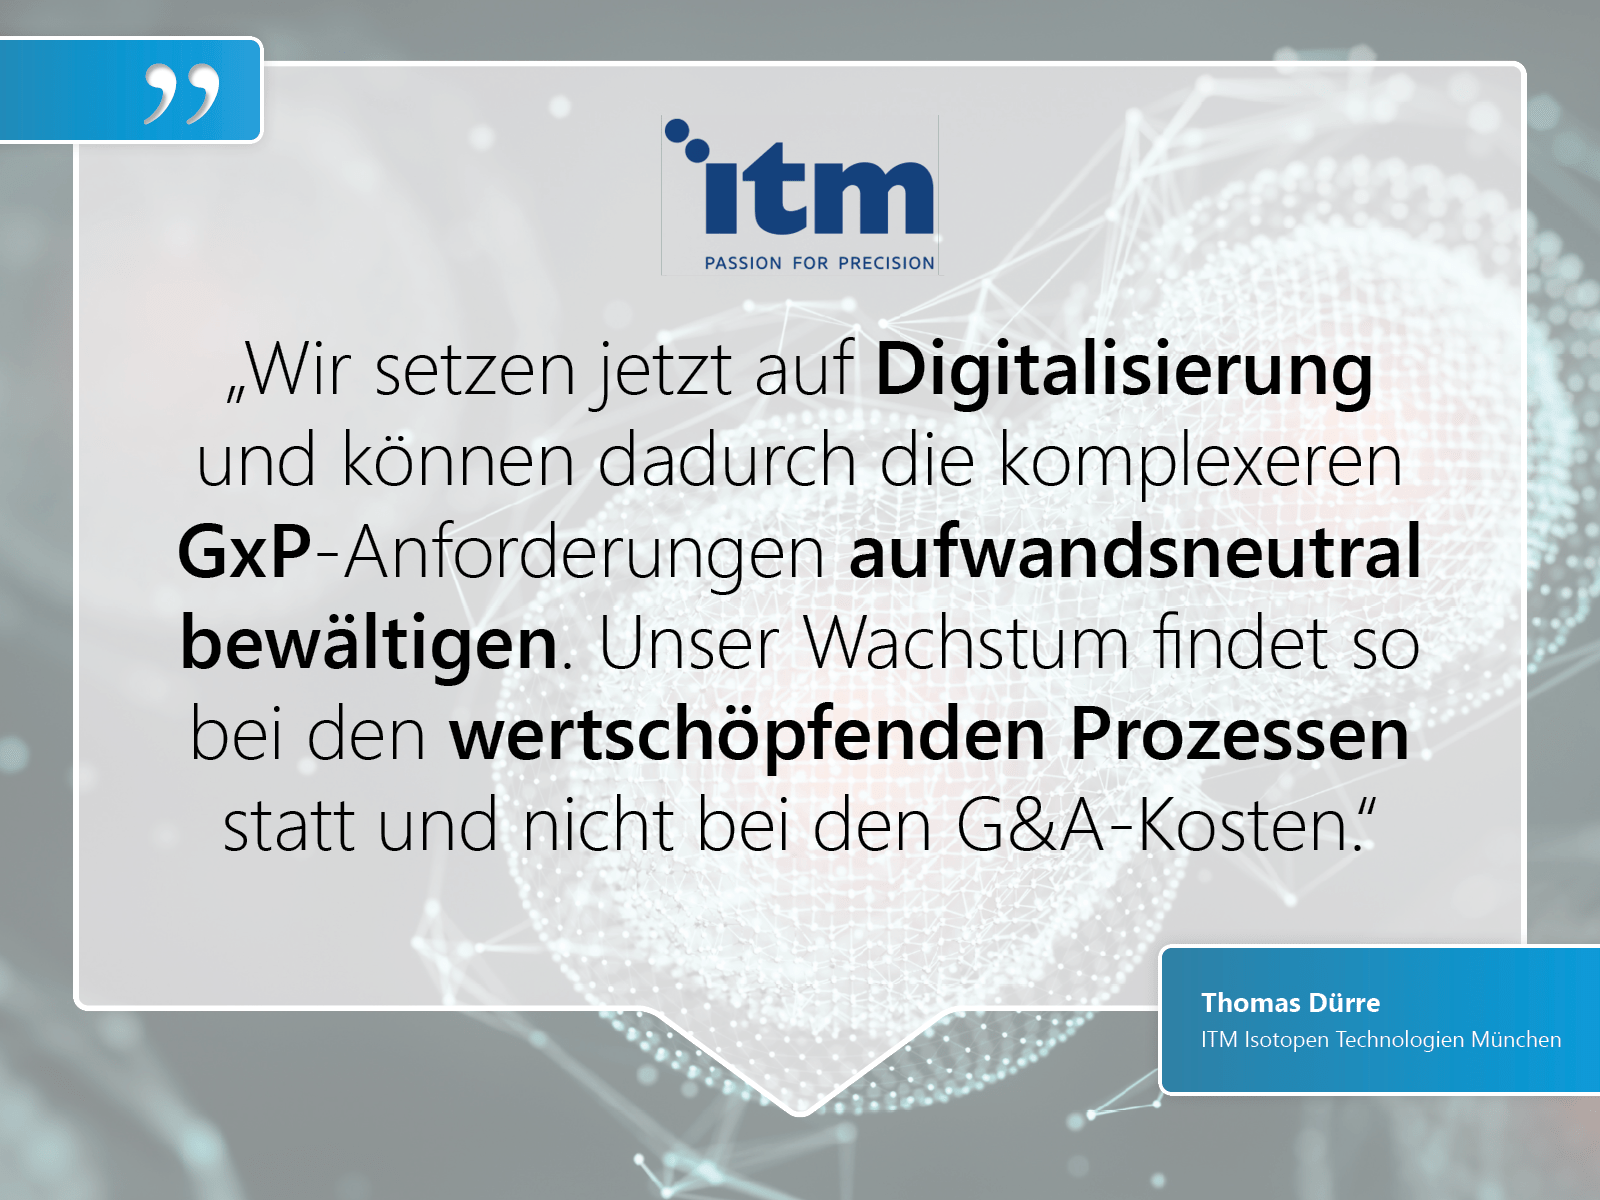 ITM Isotopen Technologien München: „Wir setzen jetzt auf Digitalisierung und können dadurch die komplexeren GxP-Anforderungen aufwandsneutral bewältigen. Unser Wachstum findet so bei den wertschöpfenden Prozessen statt und nicht bei den G&A-Kosten.“